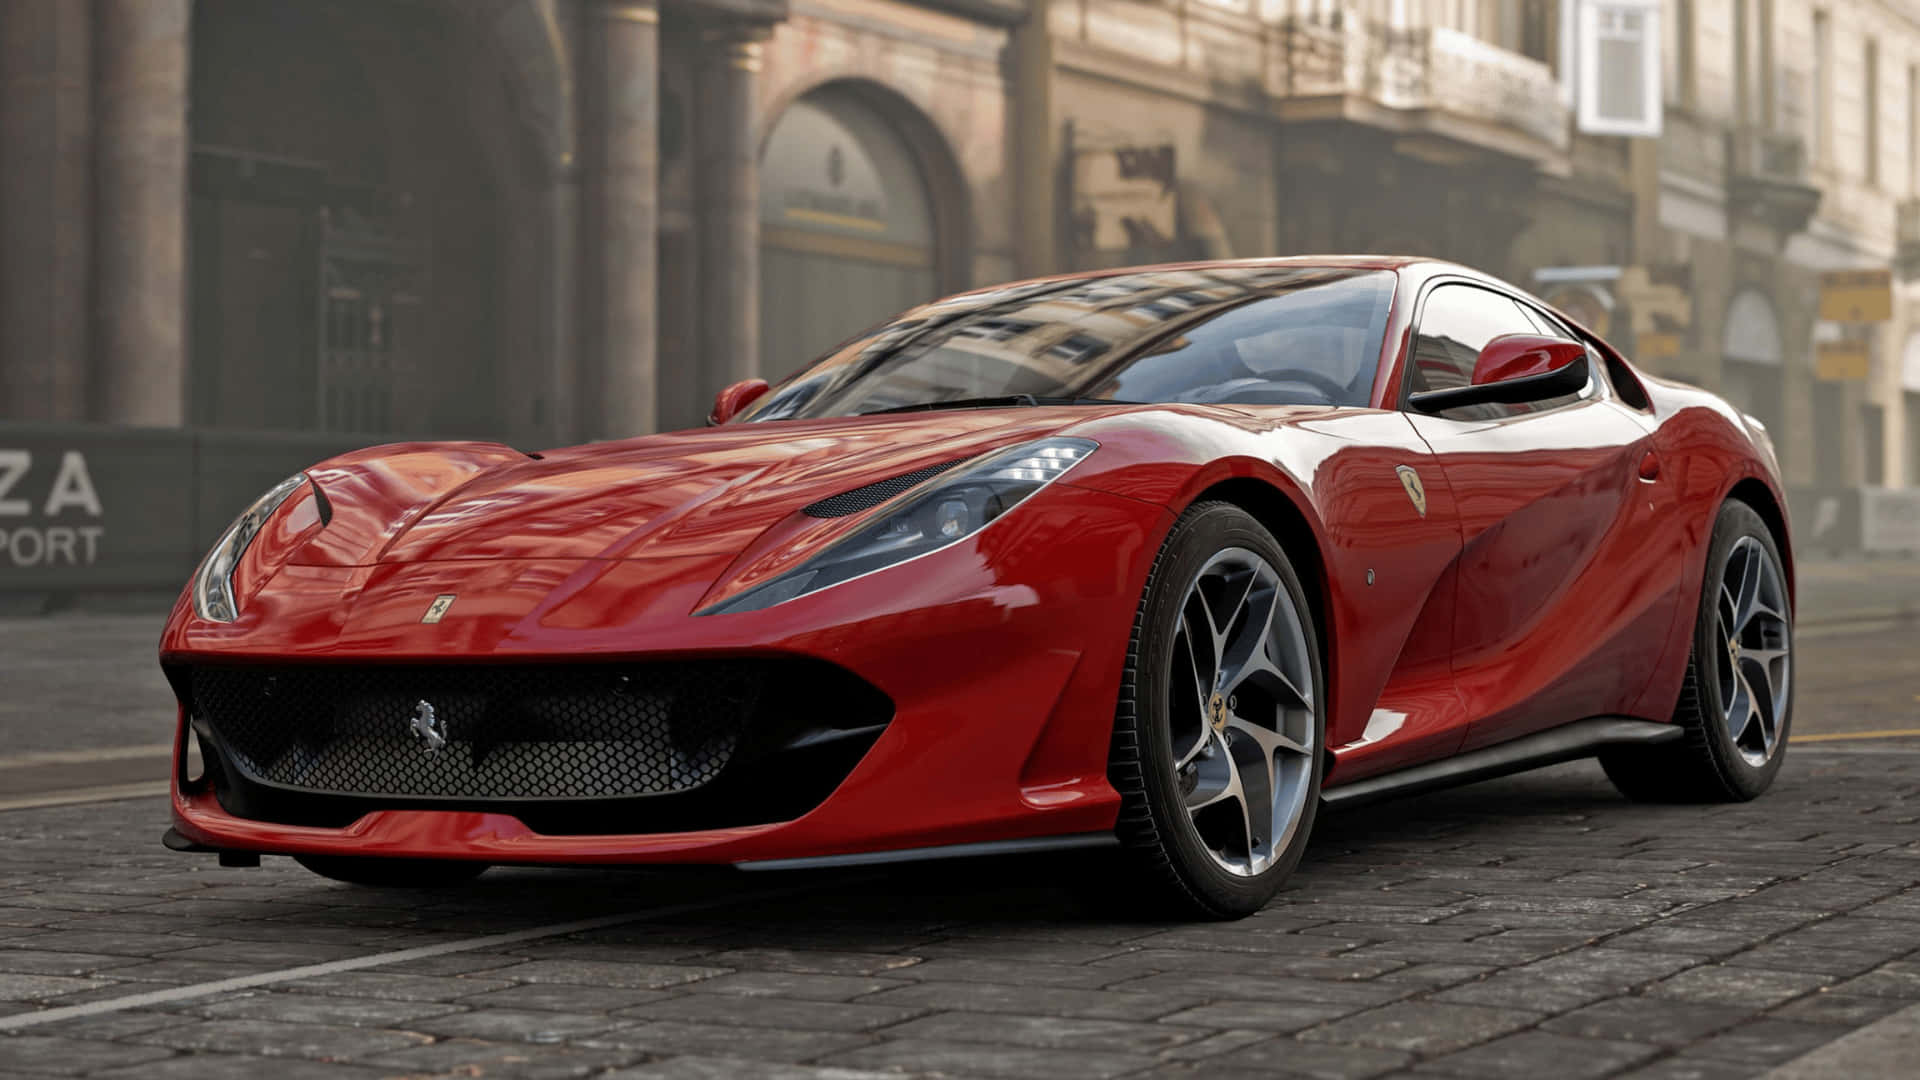 Corriverso Il Traguardo In 1080p Con Forza Motorsport 7.